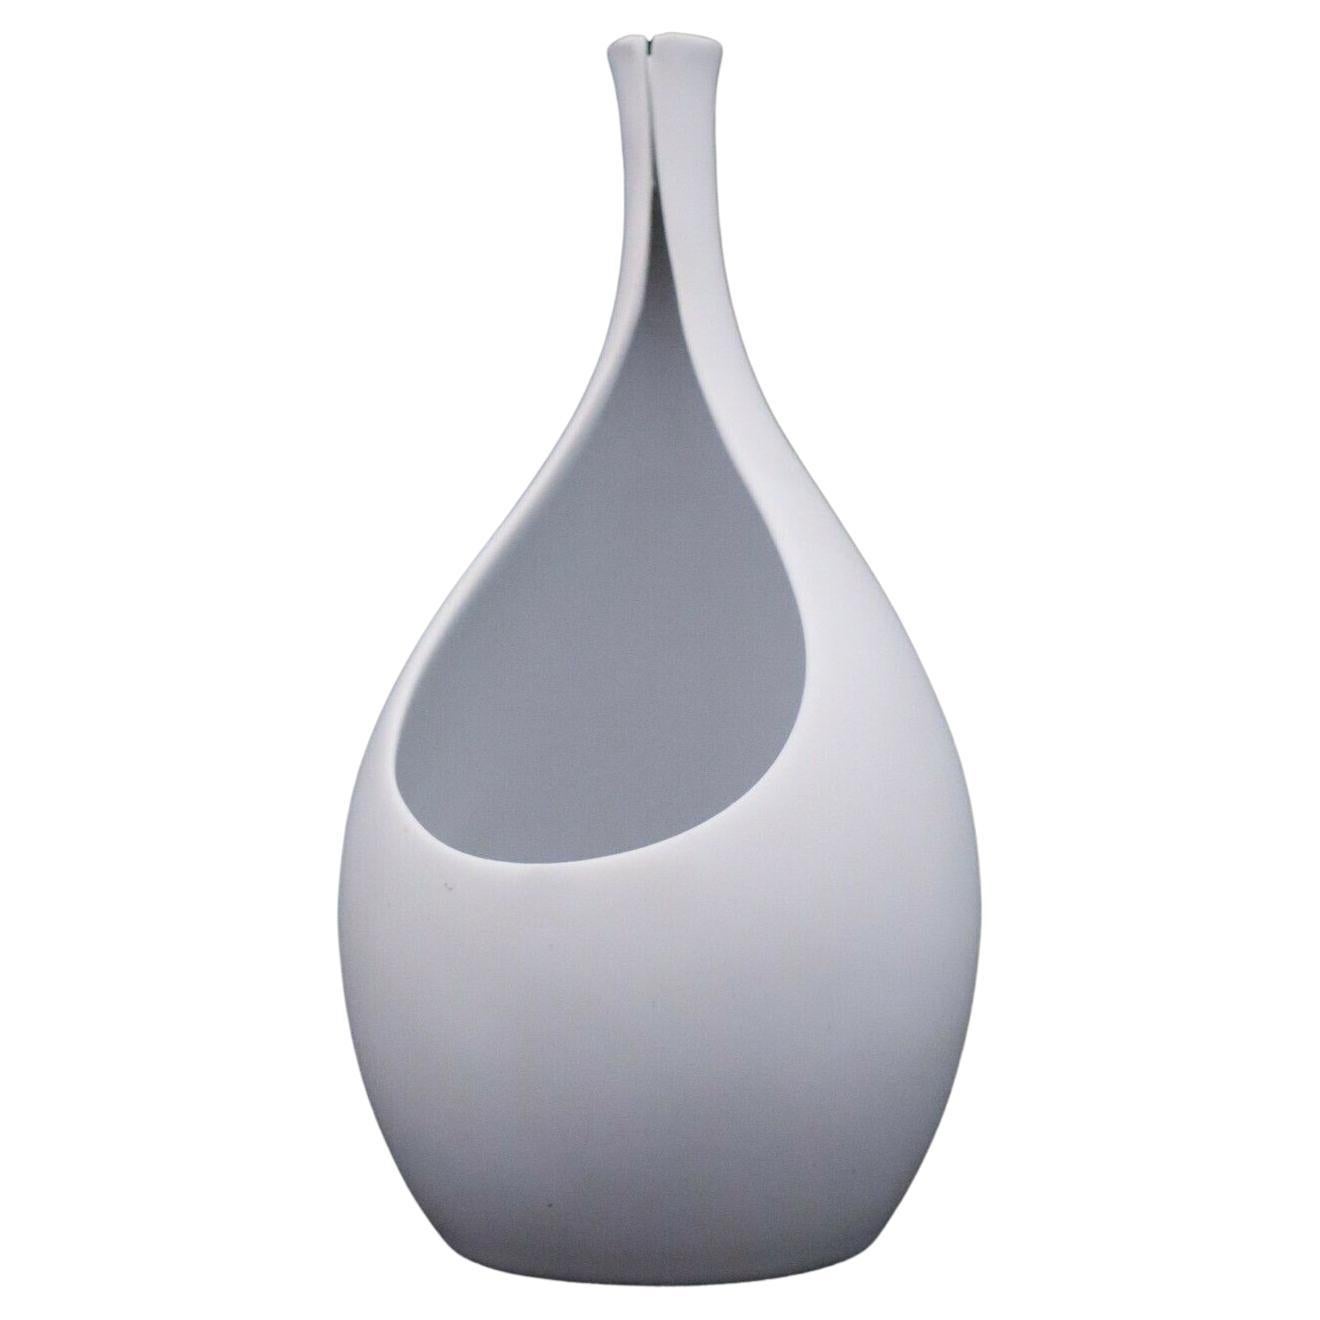 White Vase, Pungo Carrara by Stig Lindberg, Gustavsberg